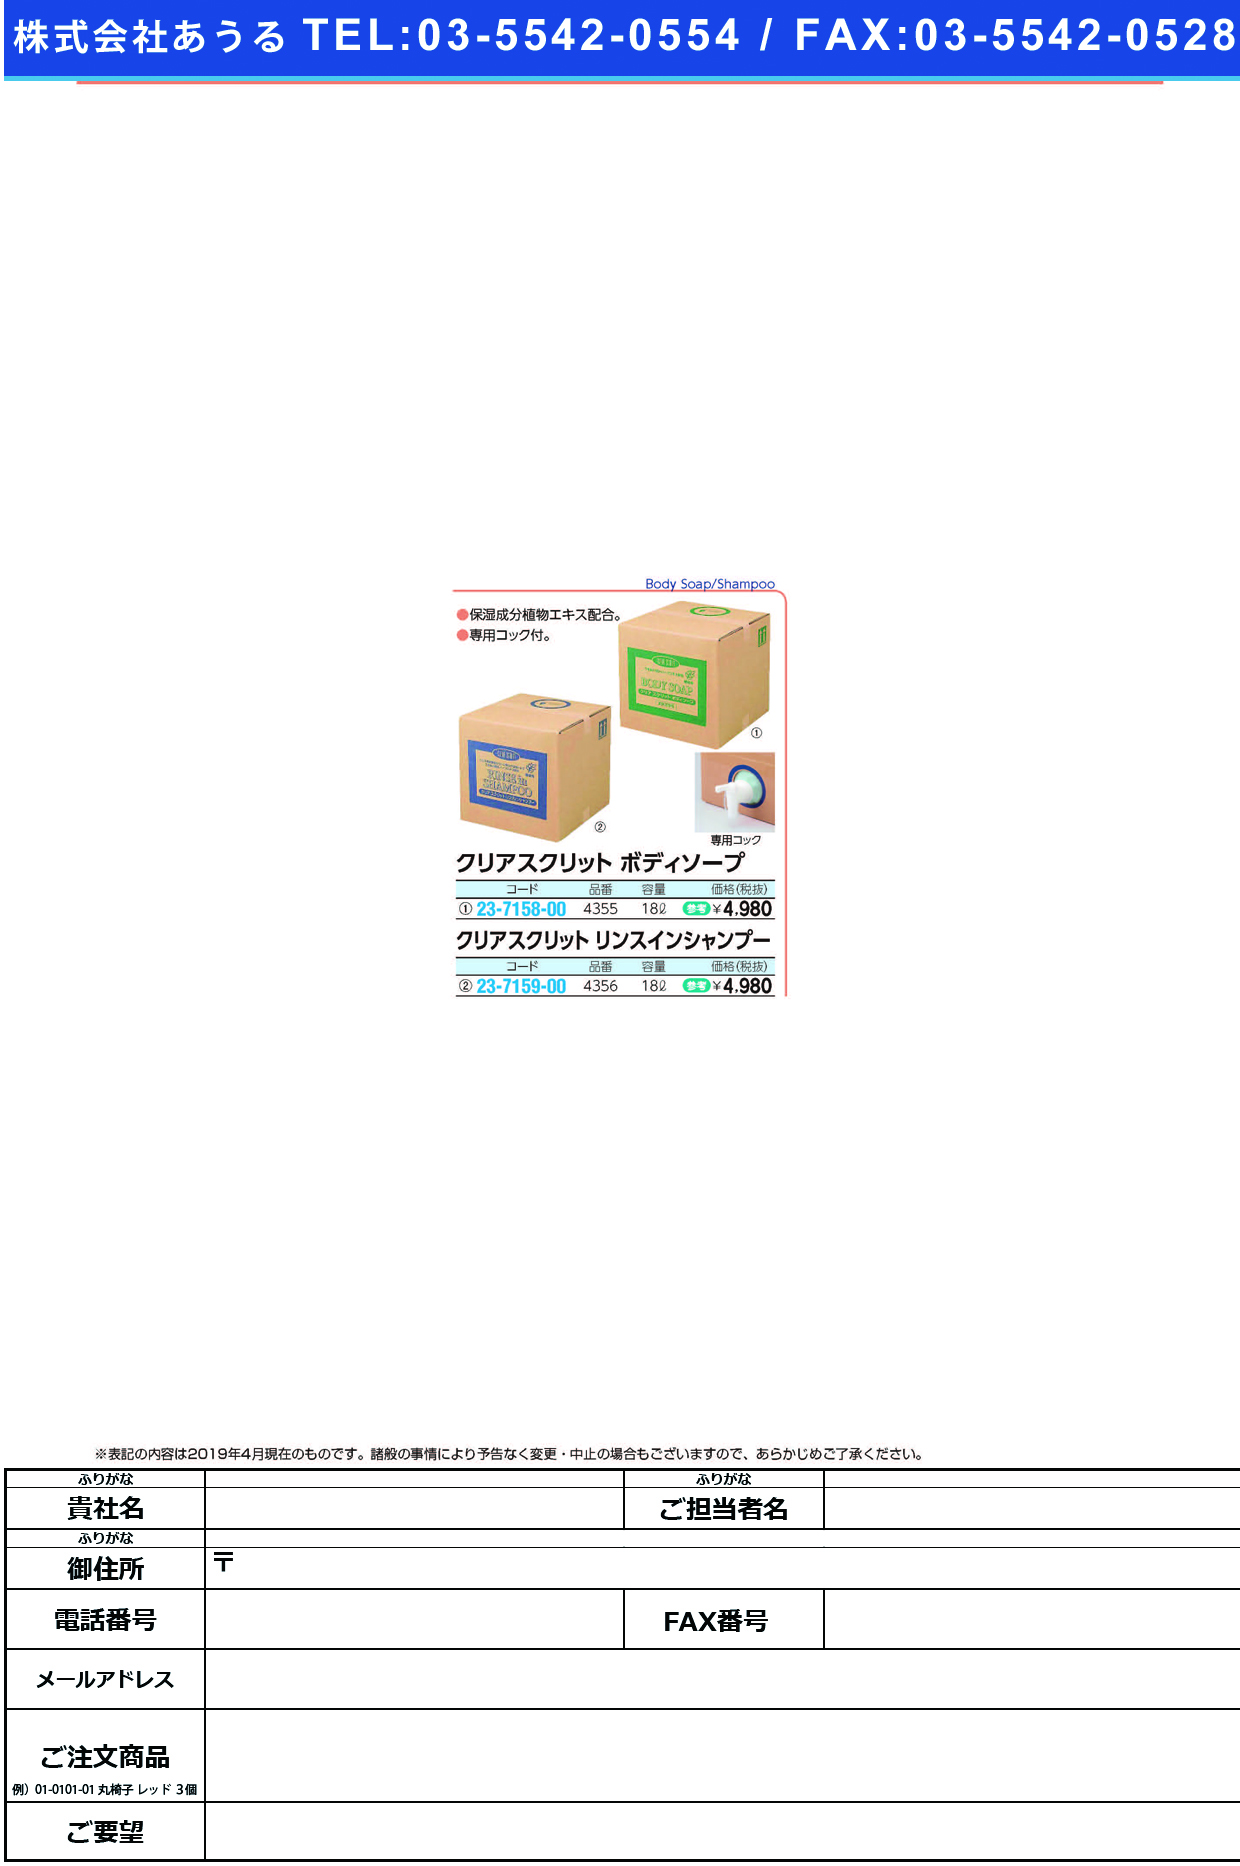 (23-7158-00)クリアスクリットボディソープ 4355(18L) ｸﾘｱｽｸﾘｯﾄﾎﾞﾃﾞｨｿｰﾌﾟ【1箱単位】【2019年カタログ商品】